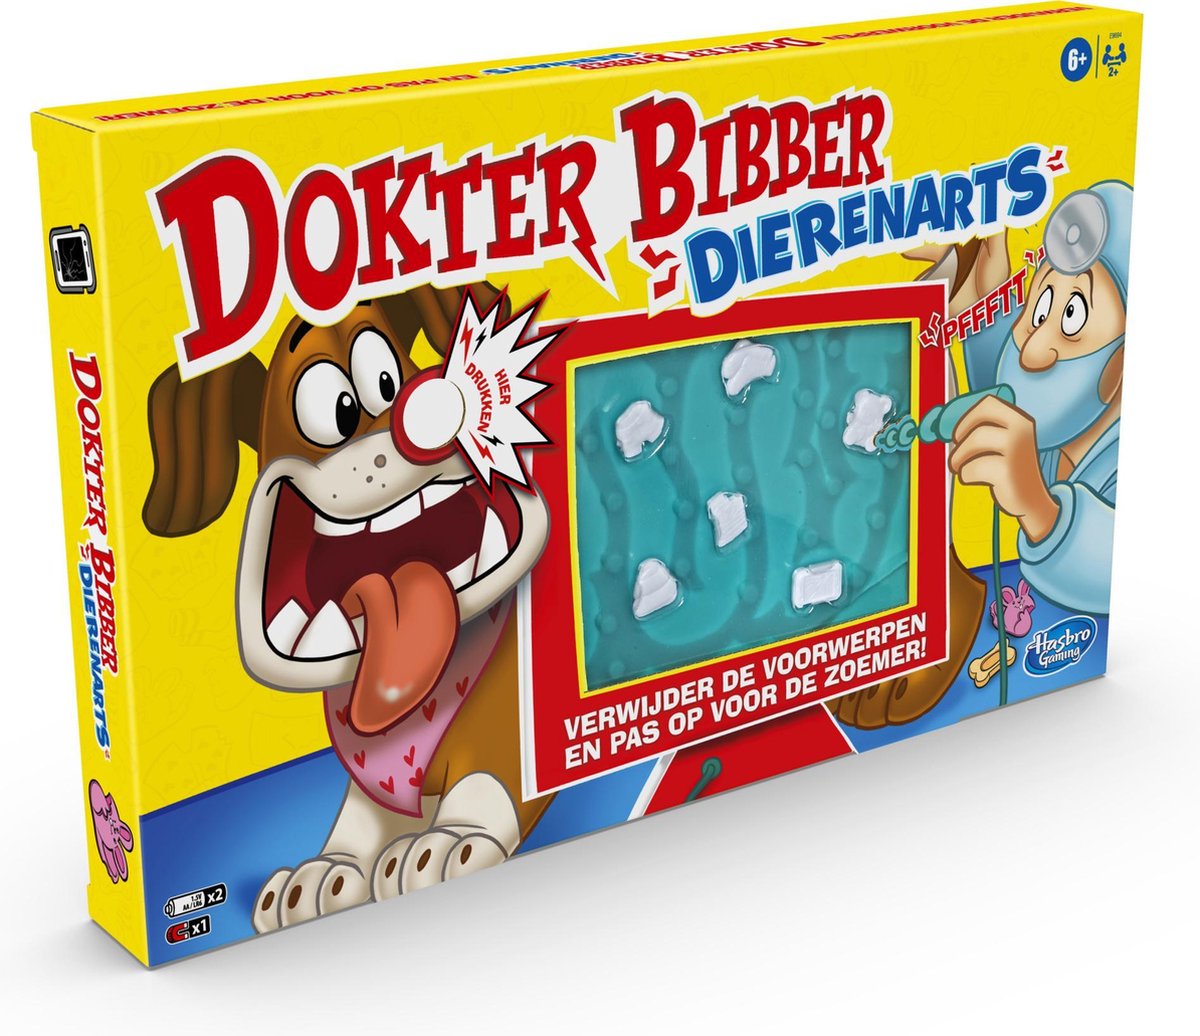 Chemie Dwingend De gasten bol.com | Dokter Bibber Dierenarts - Actiespel | Games